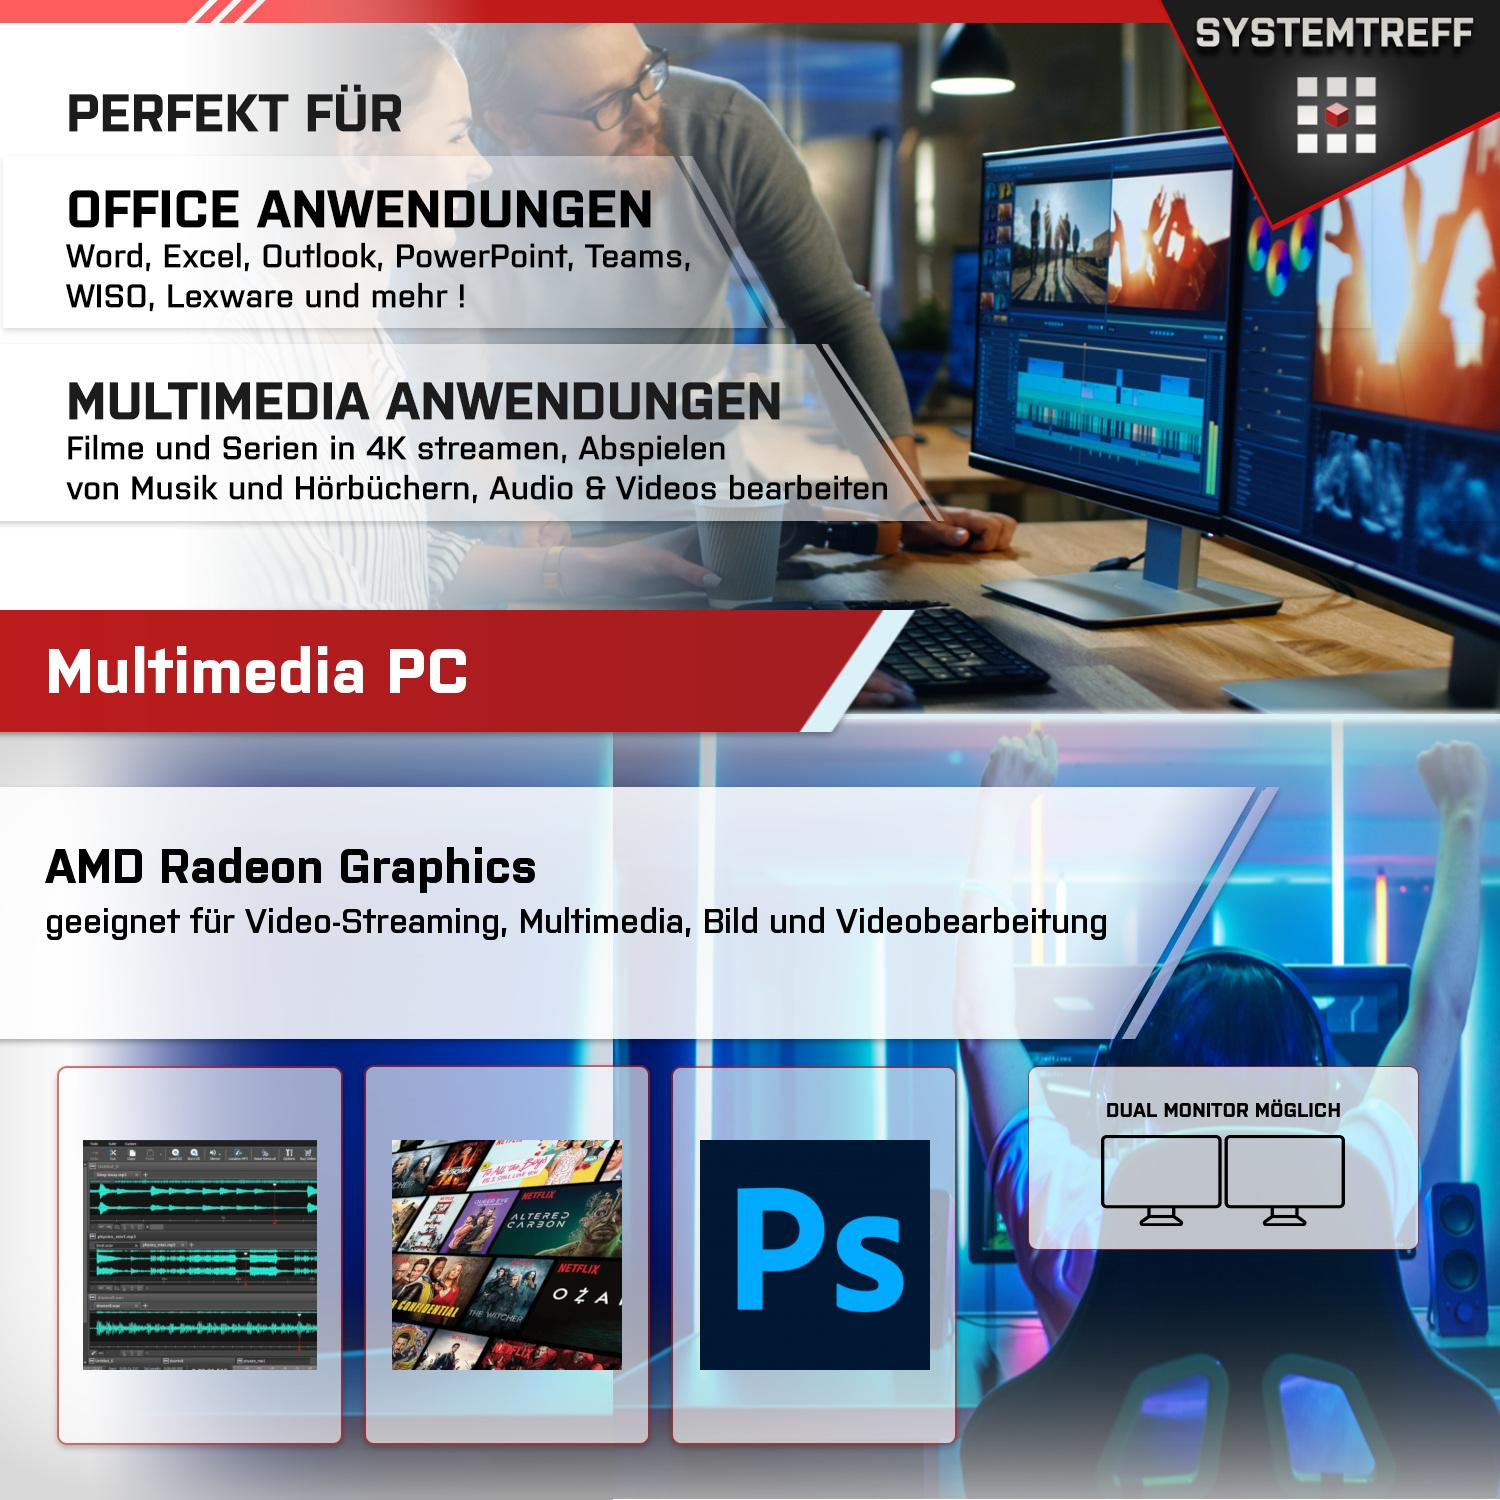 SYSTEMTREFF Office Komplett AMD AMD Graphics, RAM, Radeon Komplett 5 mit GB 7600X 7600X, mSSD, Ryzen GB Prozessor, 1000 2 16 GB PC